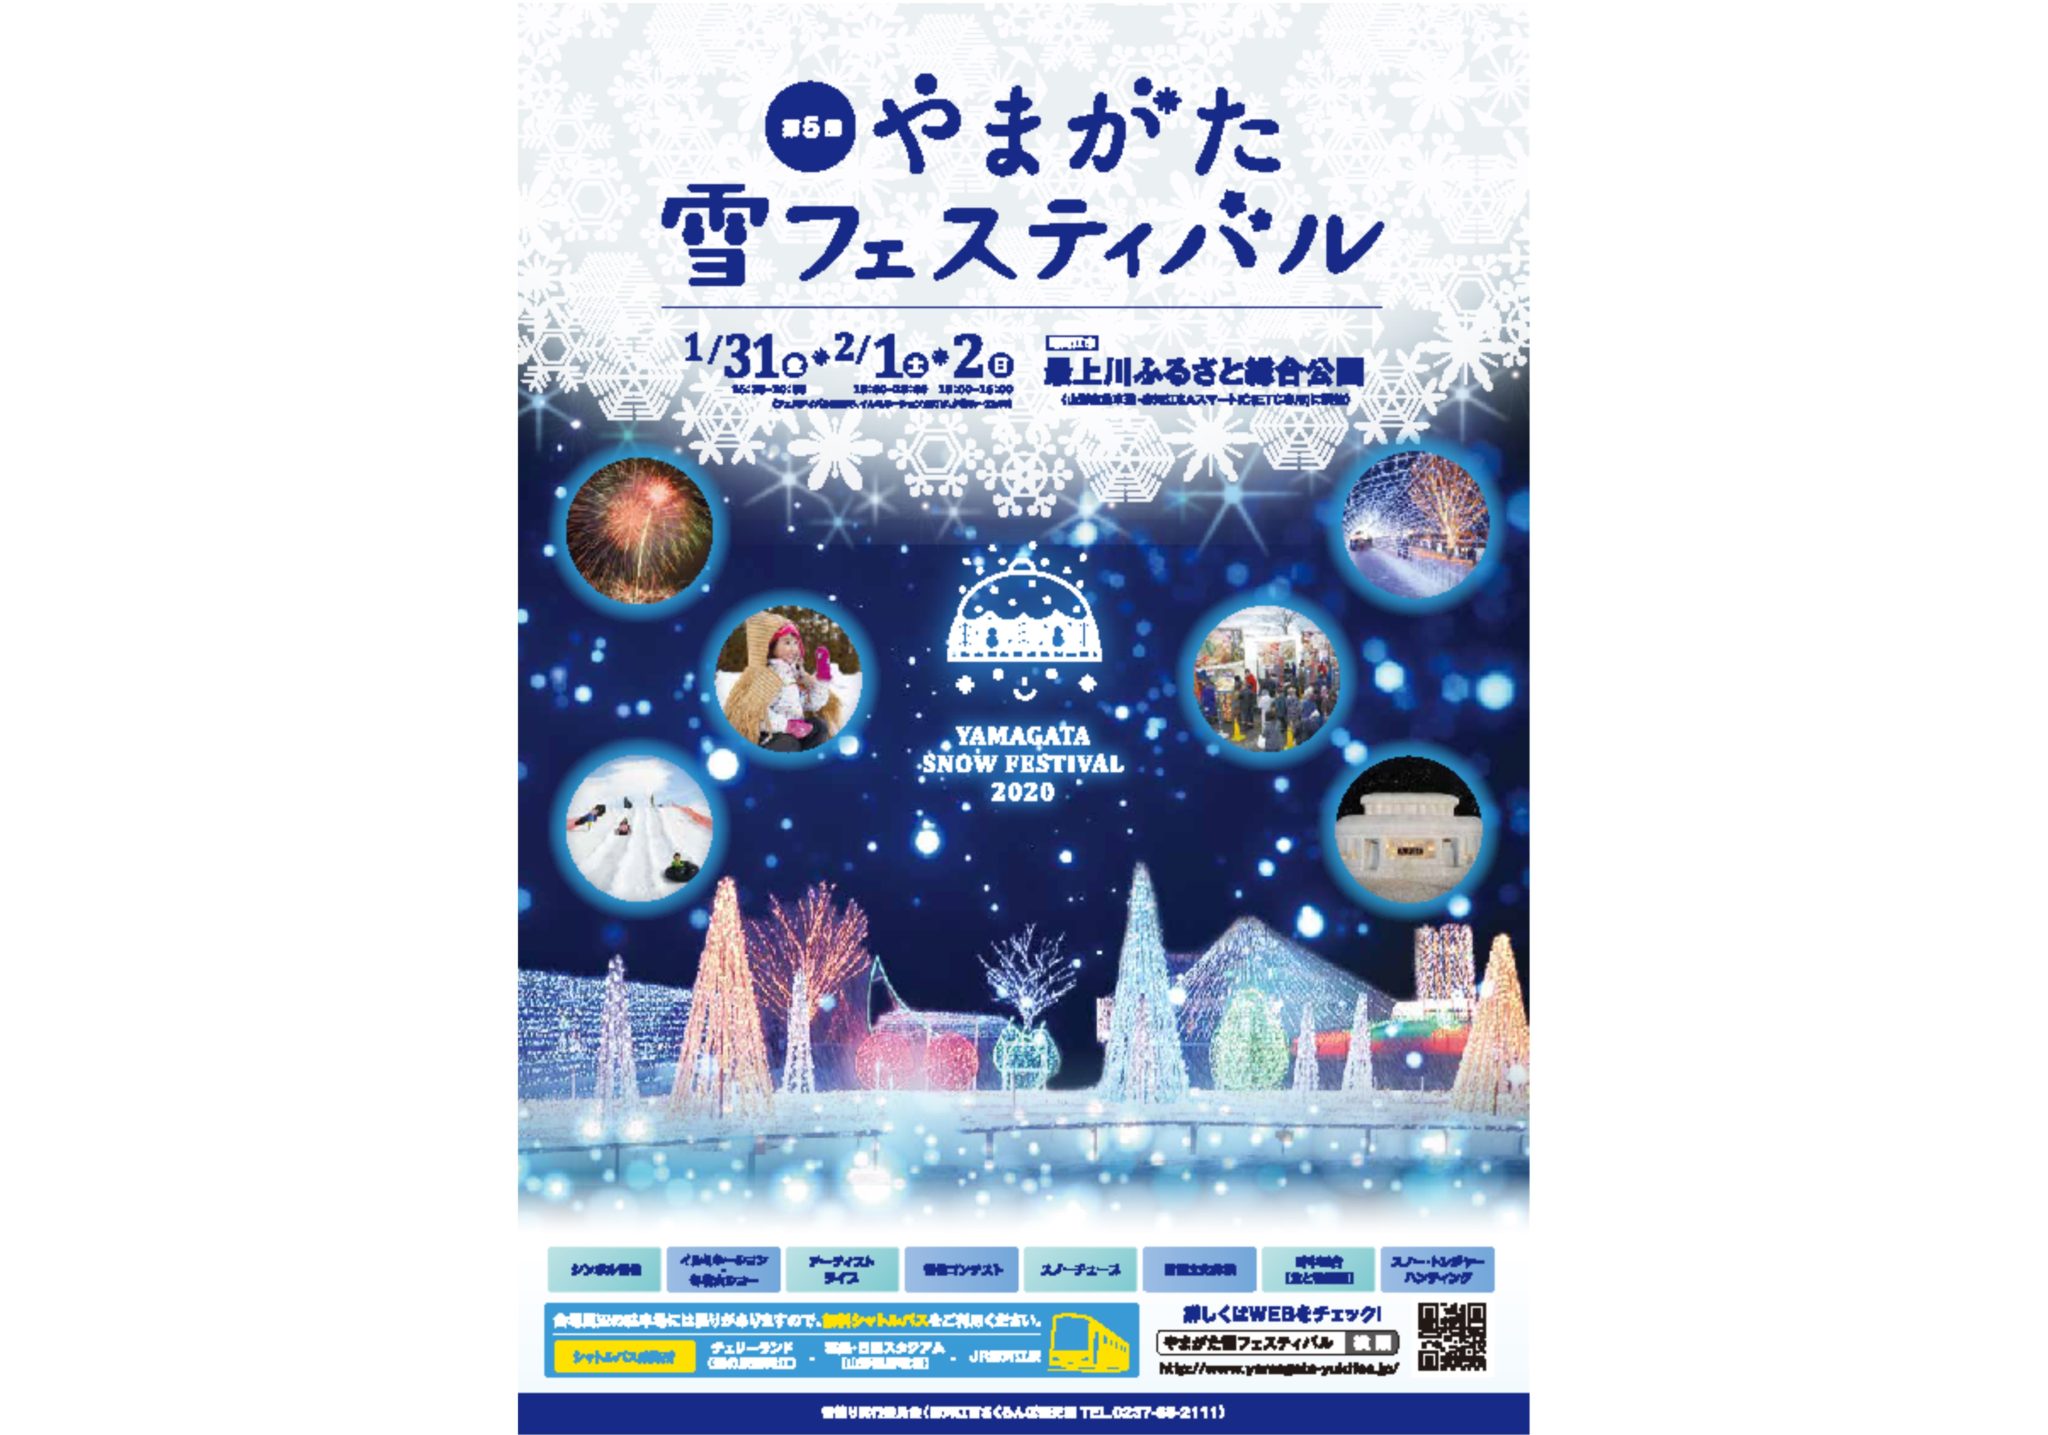 ◆やまがた雪フェスティバル